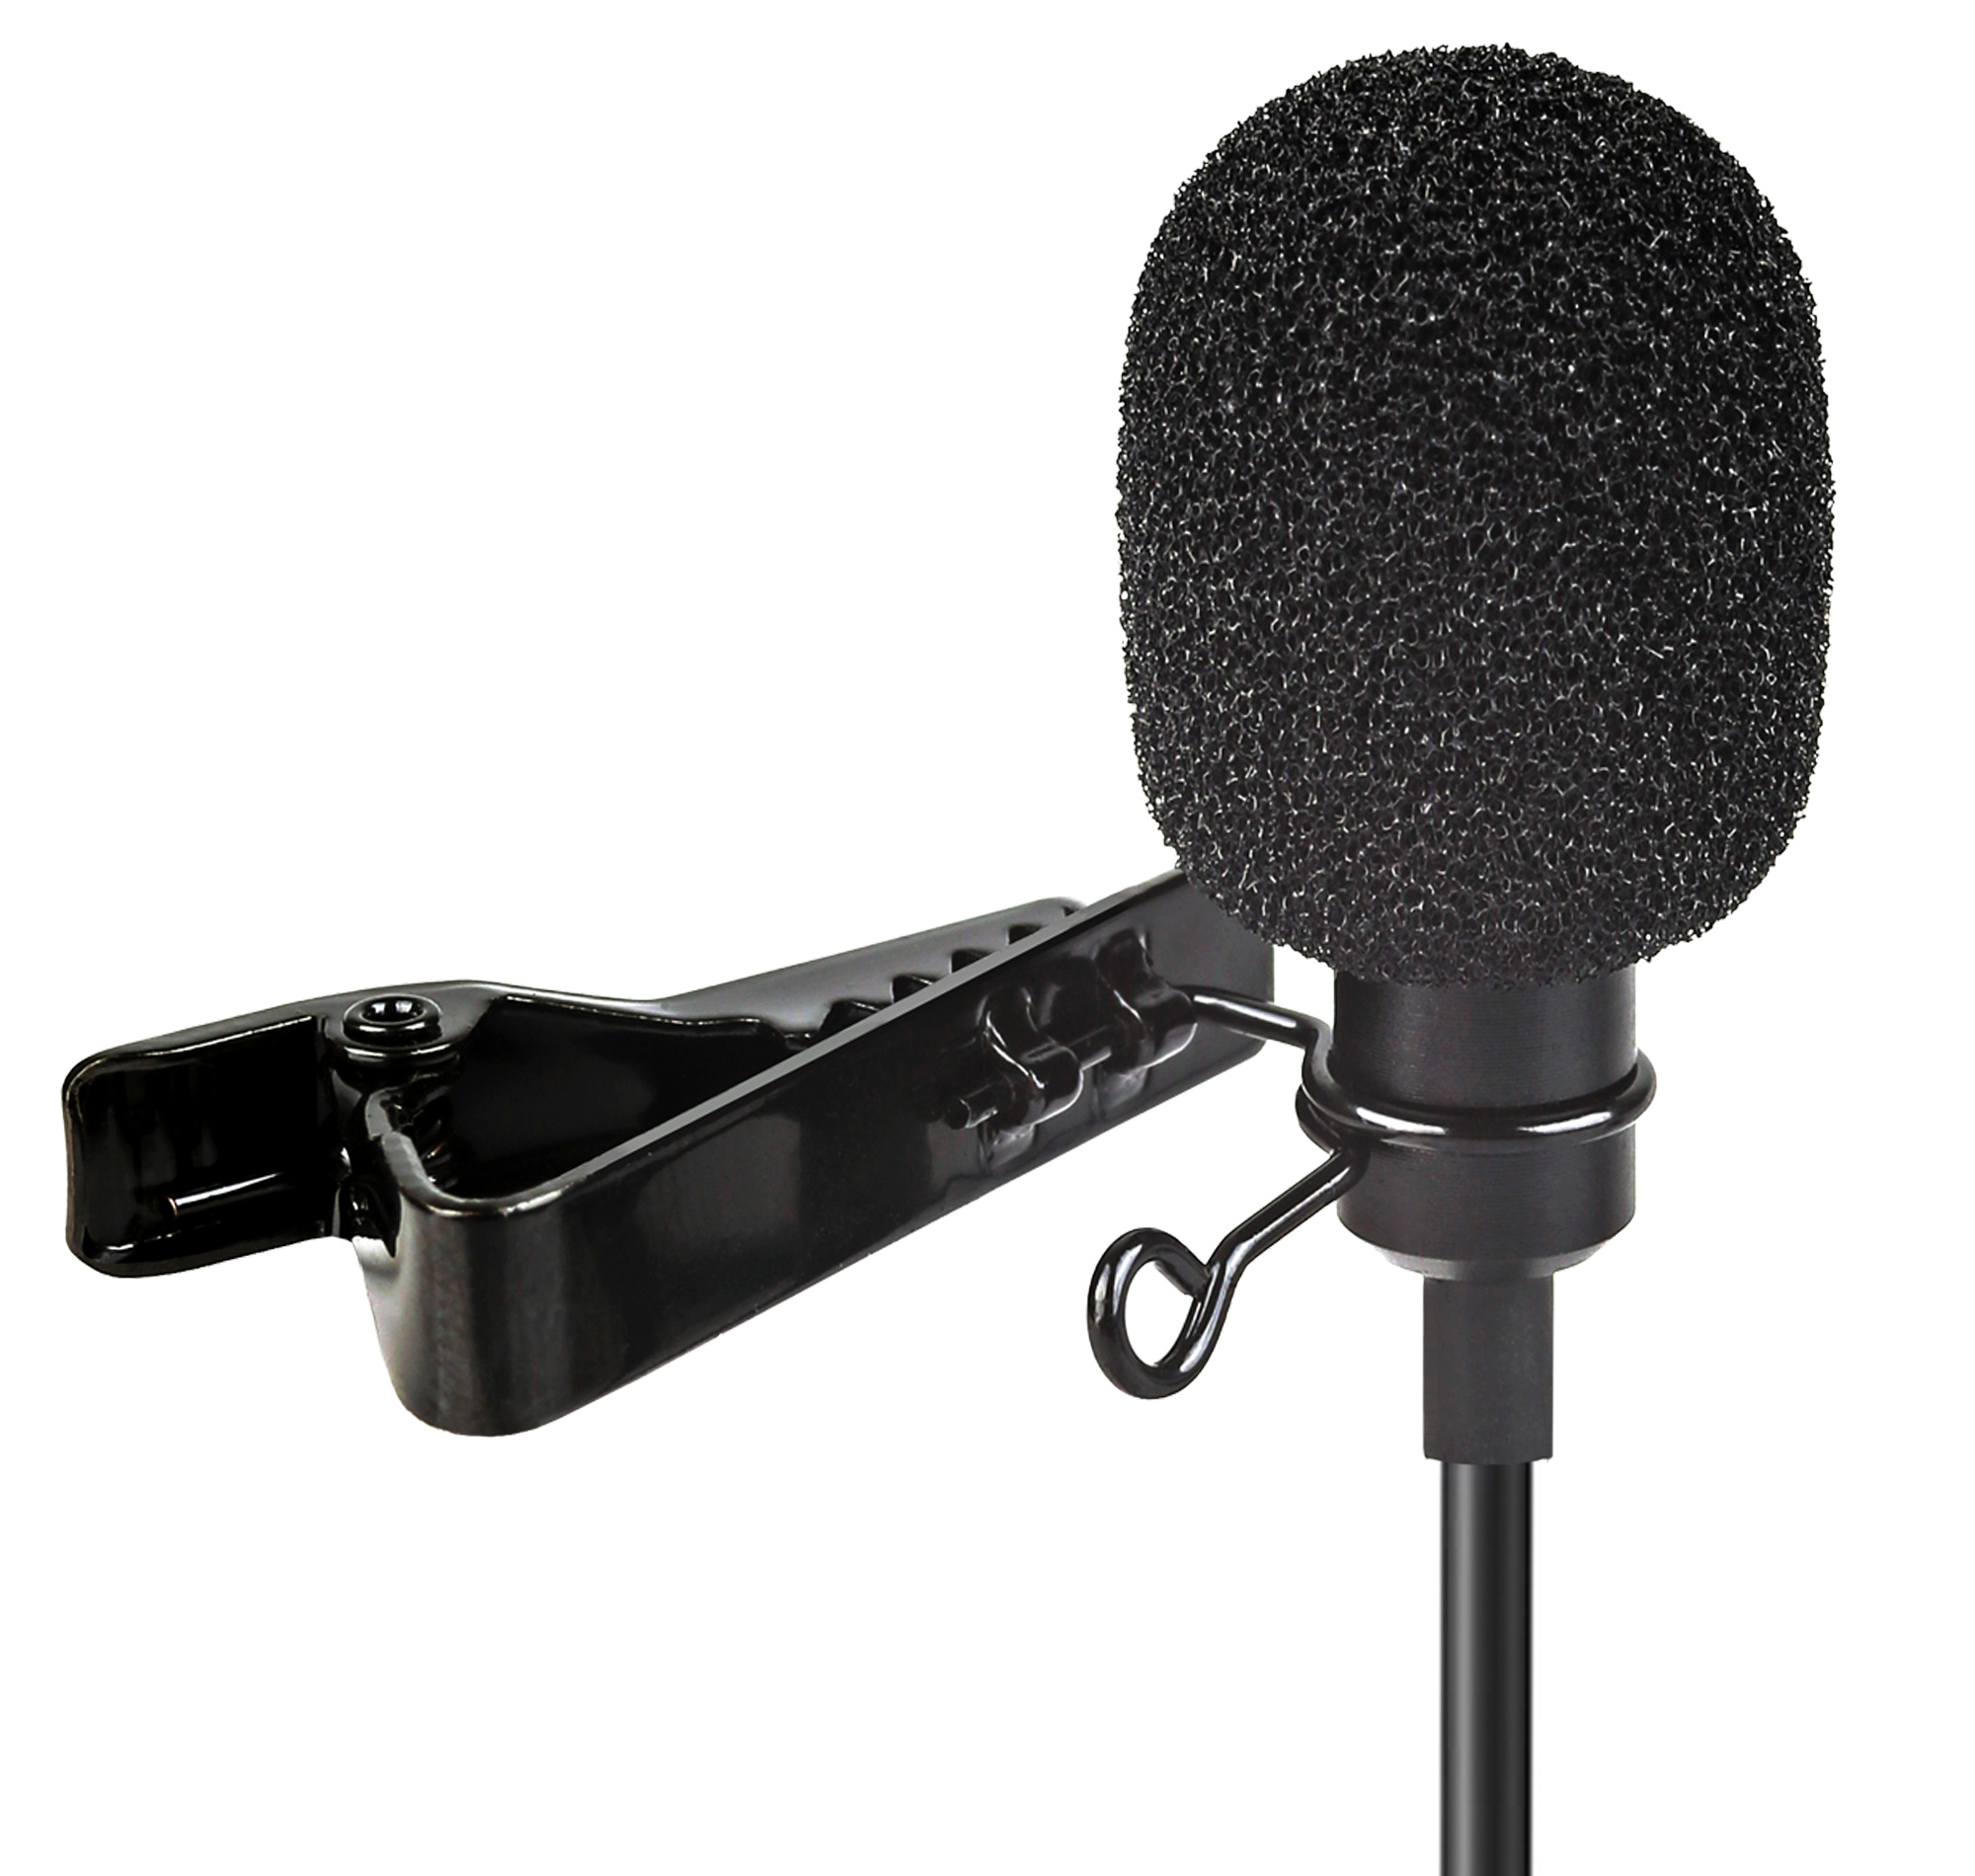 ayex Lavalier Mikrofon für iPhone & iPad mit Windschutz und Klemme perfekt für Interviews, Livestreams uvm LV-1 Lightning